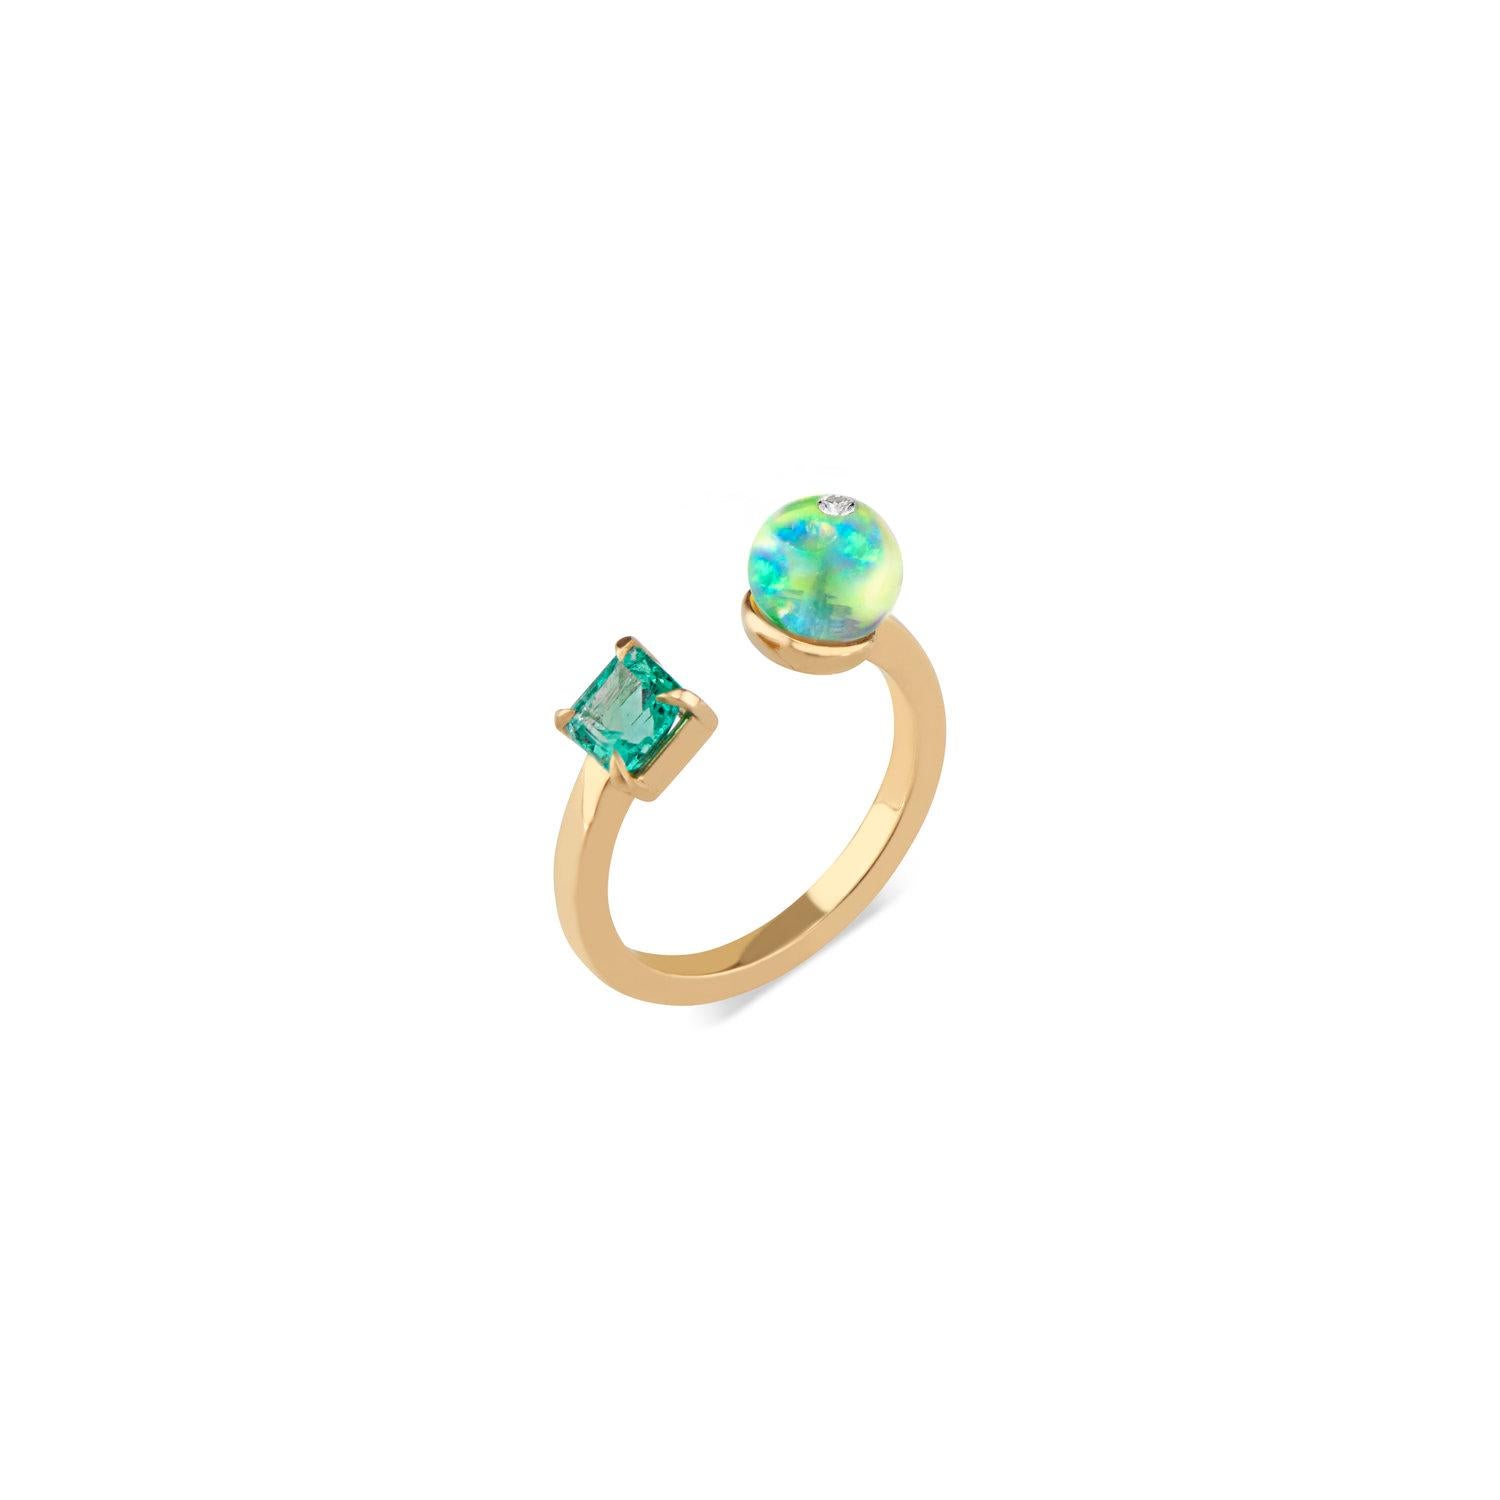 Abstraite et artistique, la bague Toi Moi Opal Bead Emerald and Diamond de Ri Noor crée un contraste dynamique entre des formes géométriques. La bande carrée en or jaune 18 carats s'enroule autour du doigt de la personne qui la porte, présentant